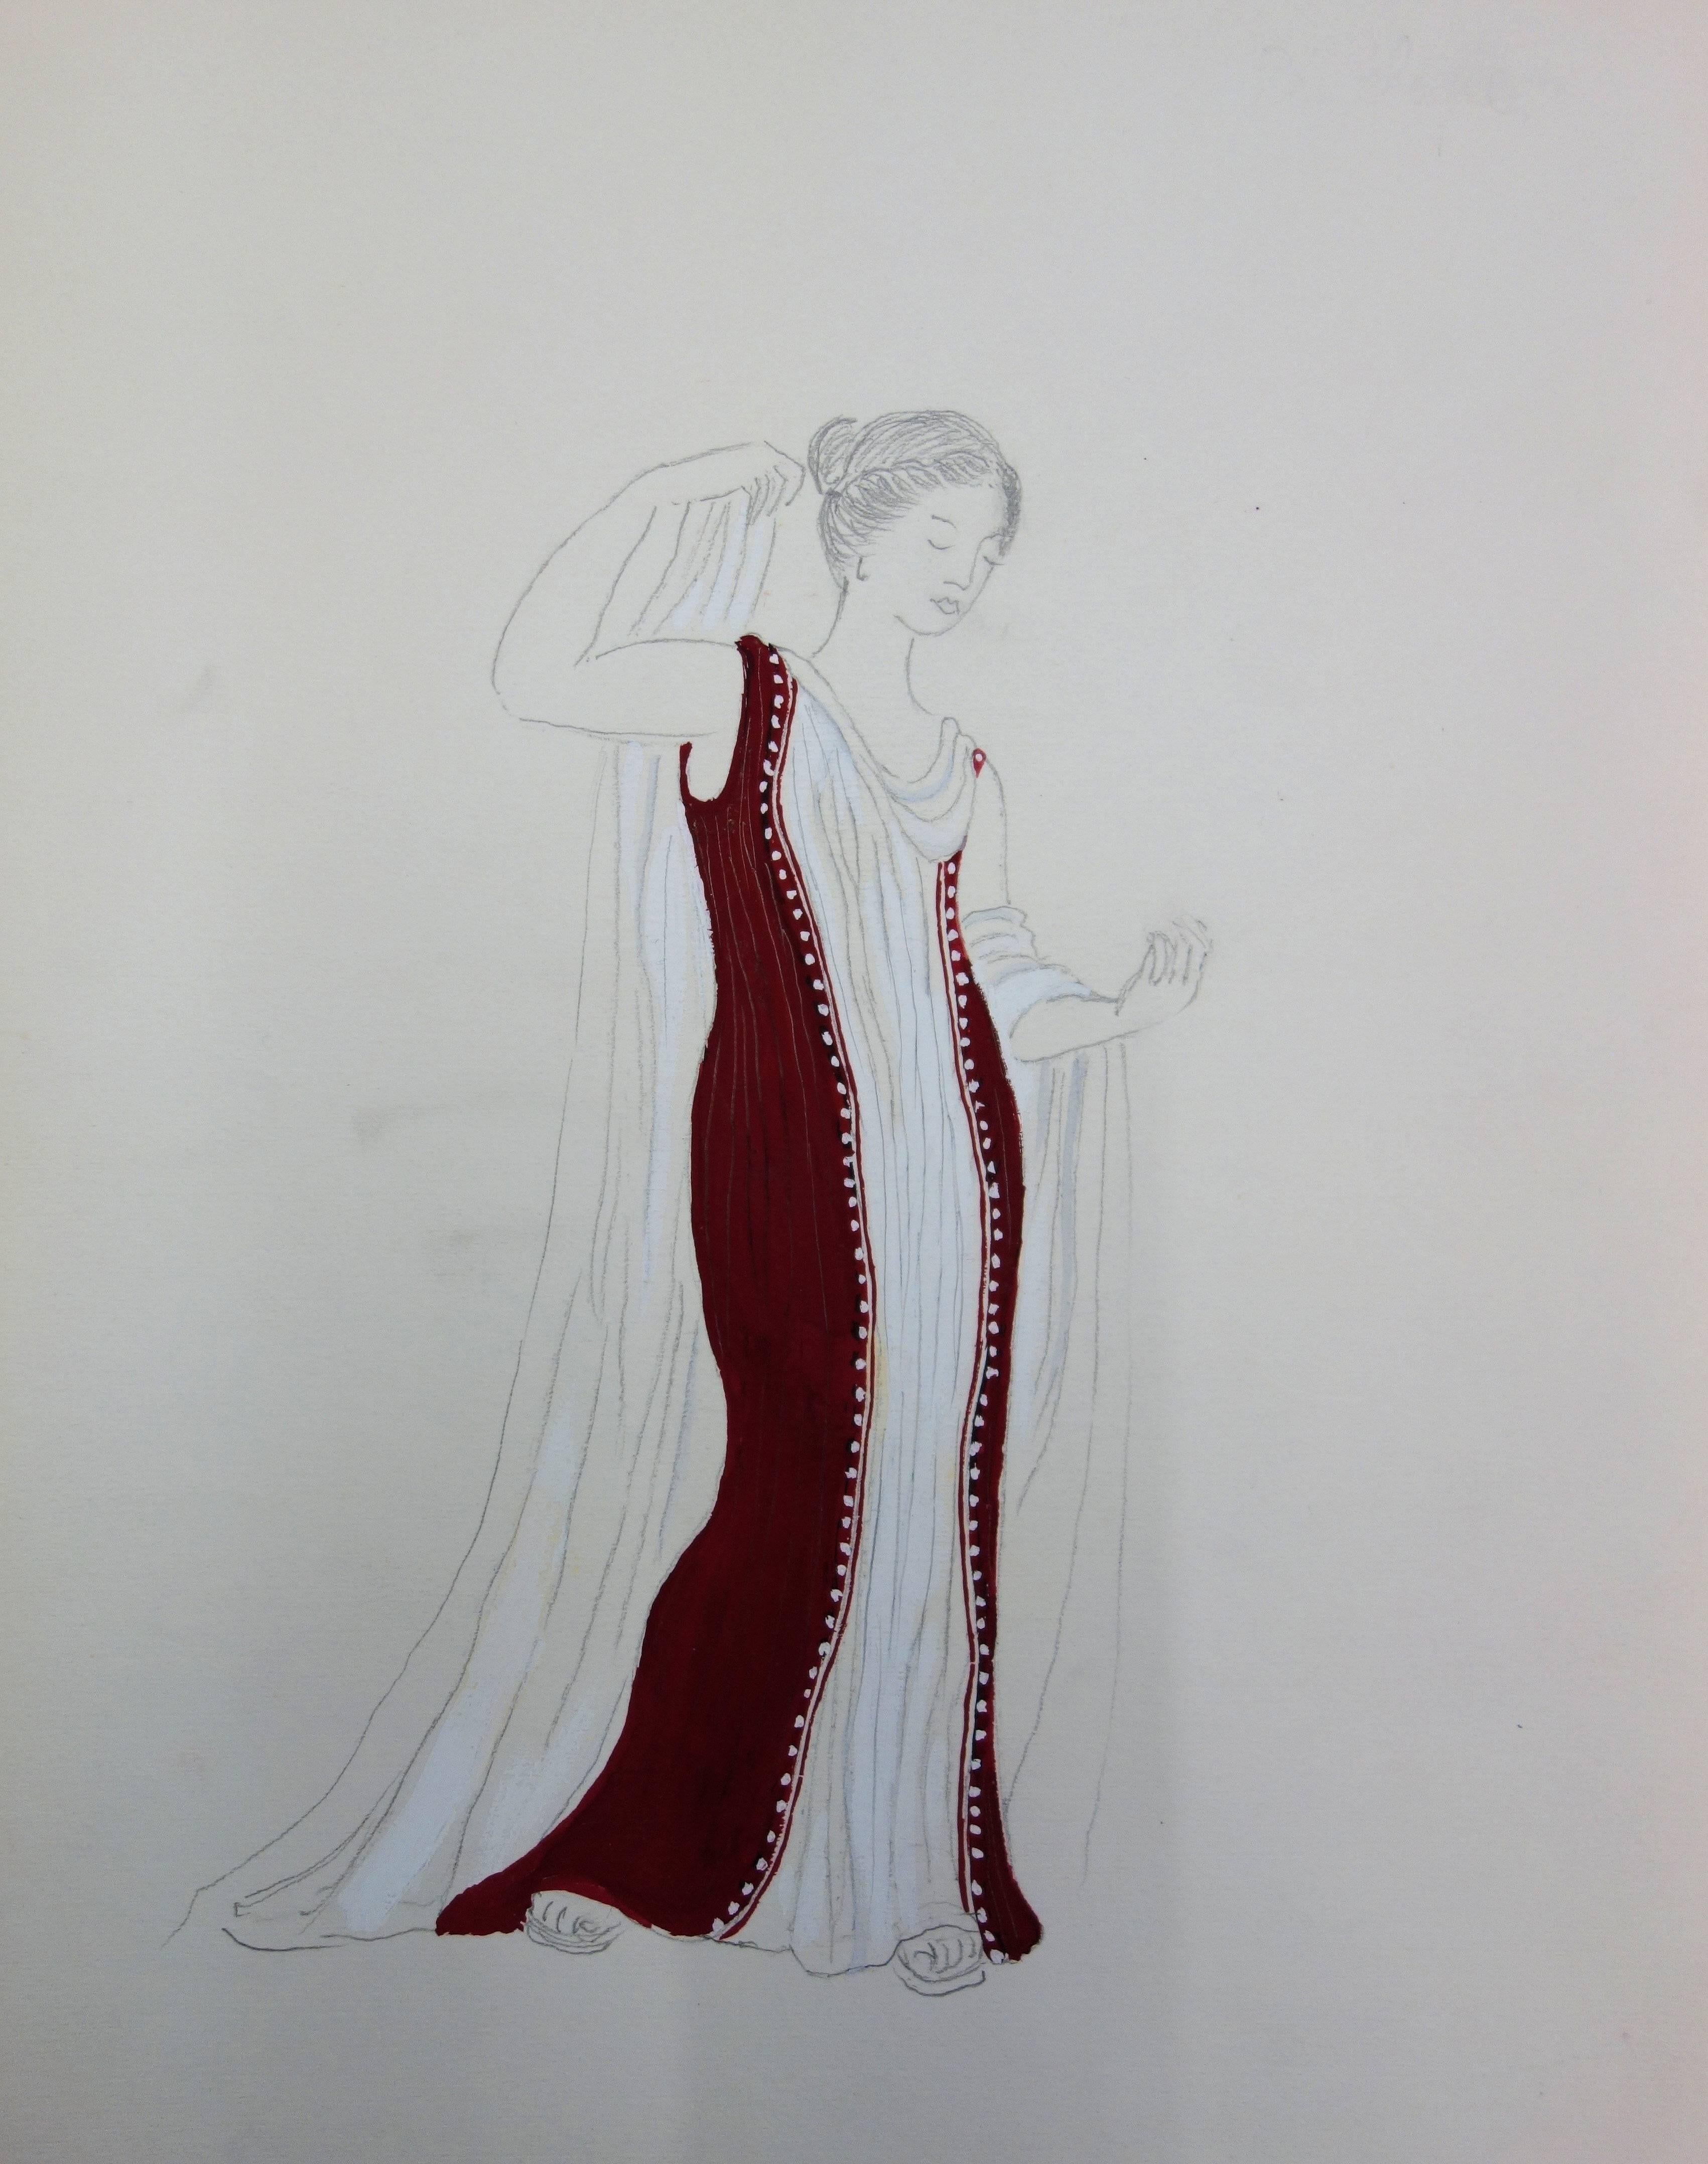 Langes rotes Kleid: Antikes griechisches Kostüm (Antigone) – Original Aquarellzeichnung